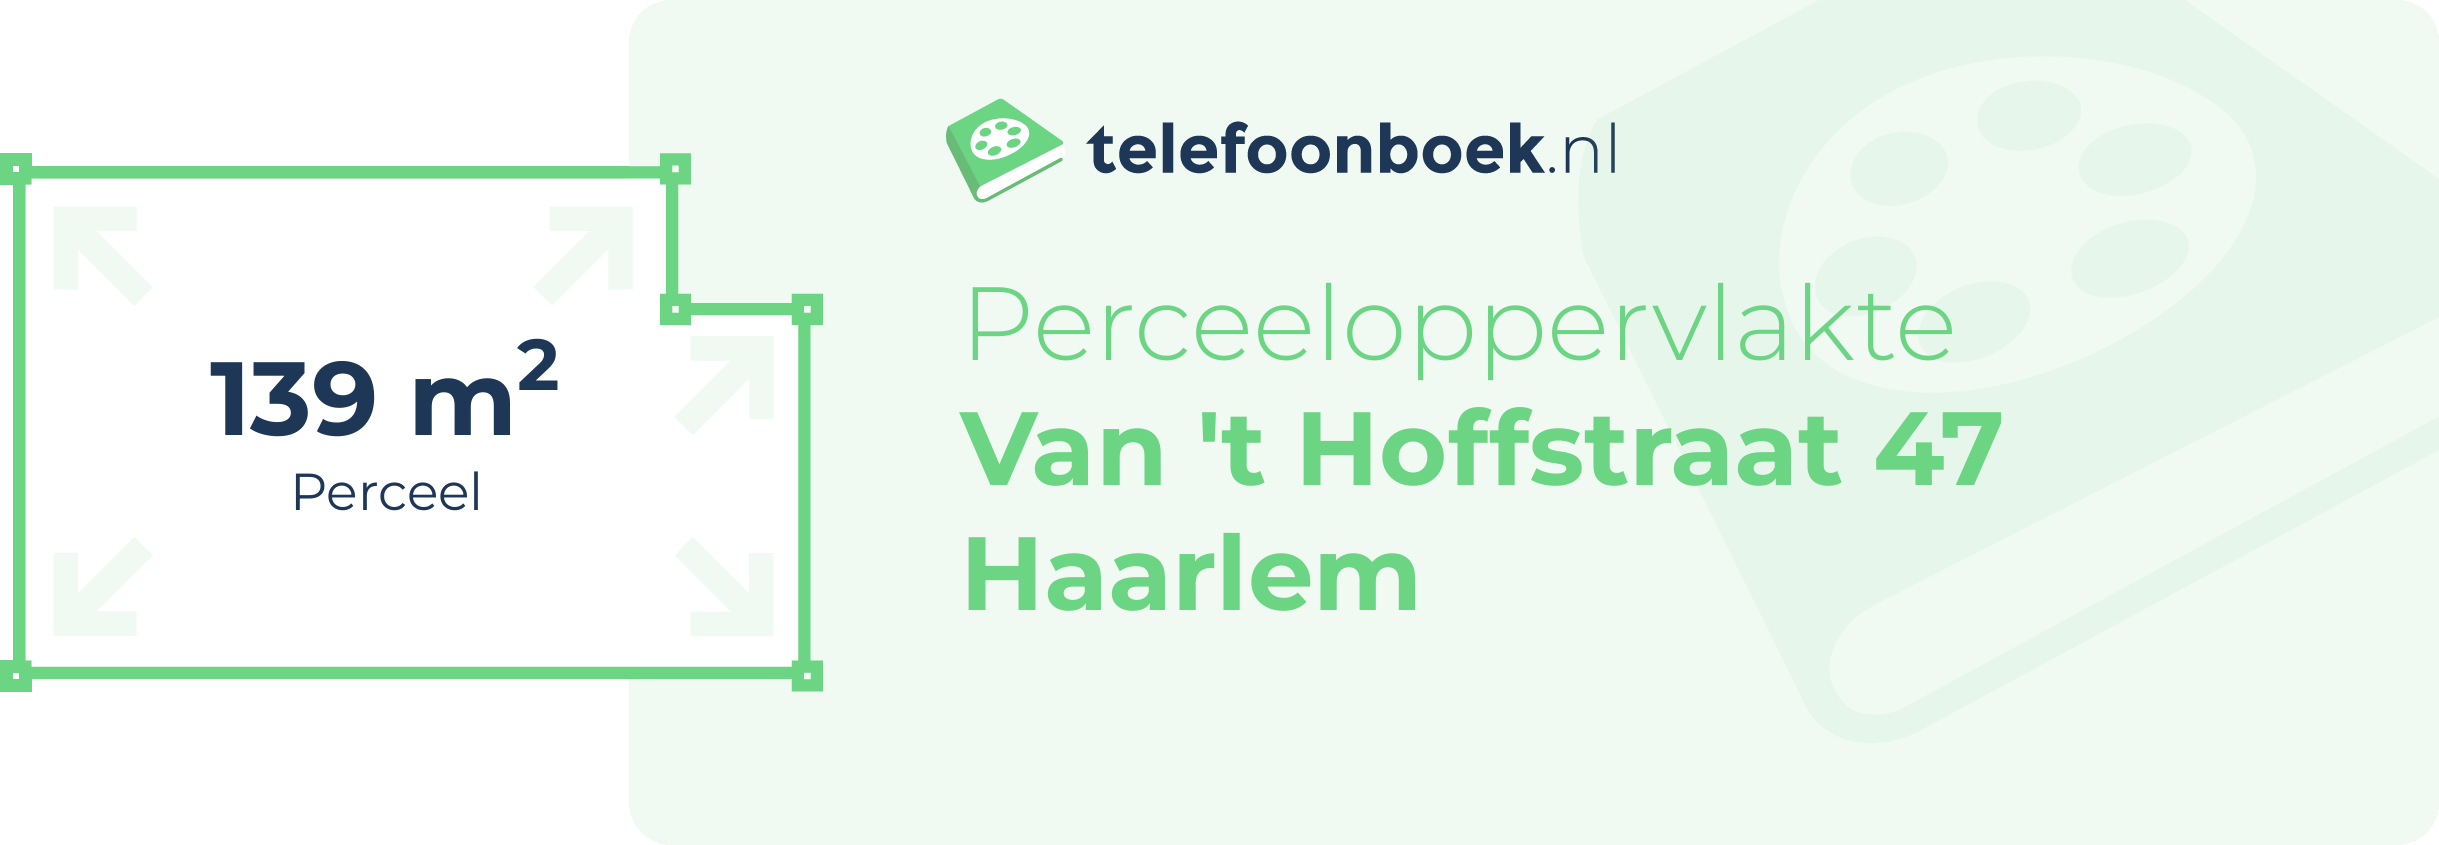 Perceeloppervlakte Van 't Hoffstraat 47 Haarlem